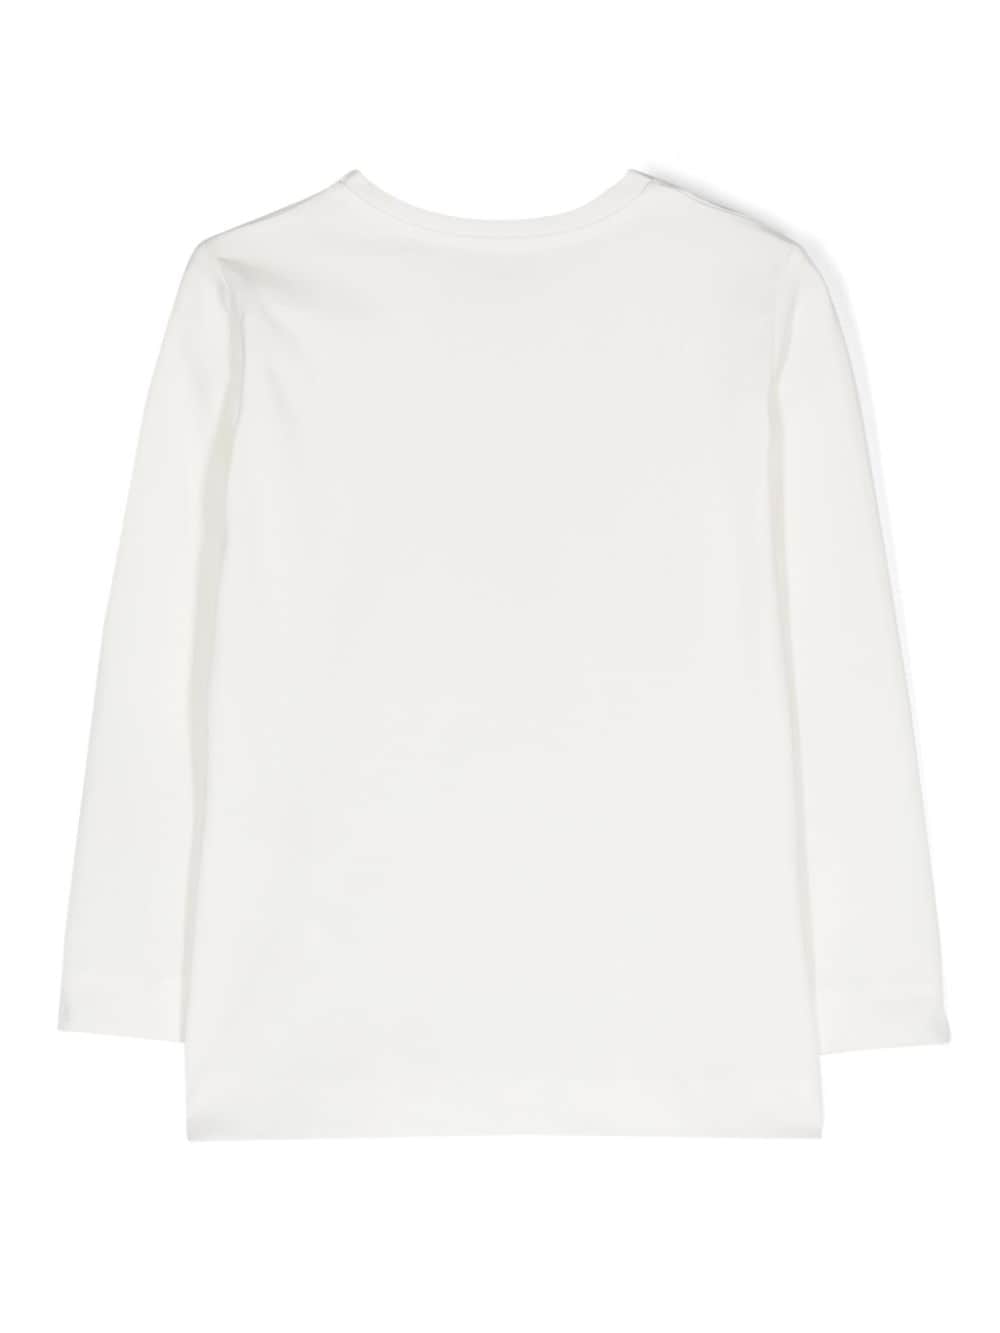 White cotton blend t-shirt for girls